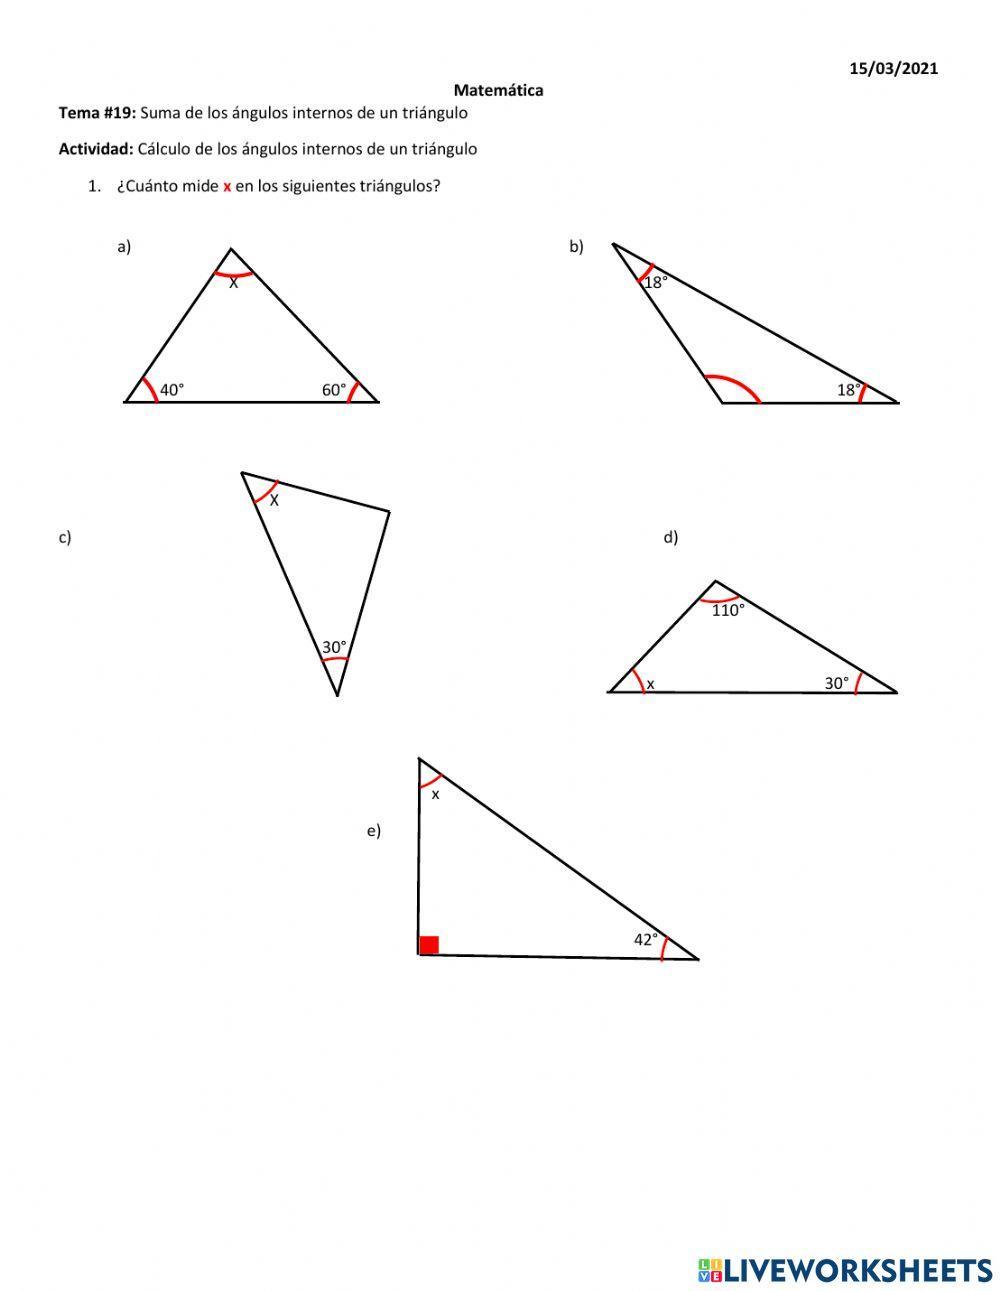 Cálculo de los ángulos internos de un triángulo